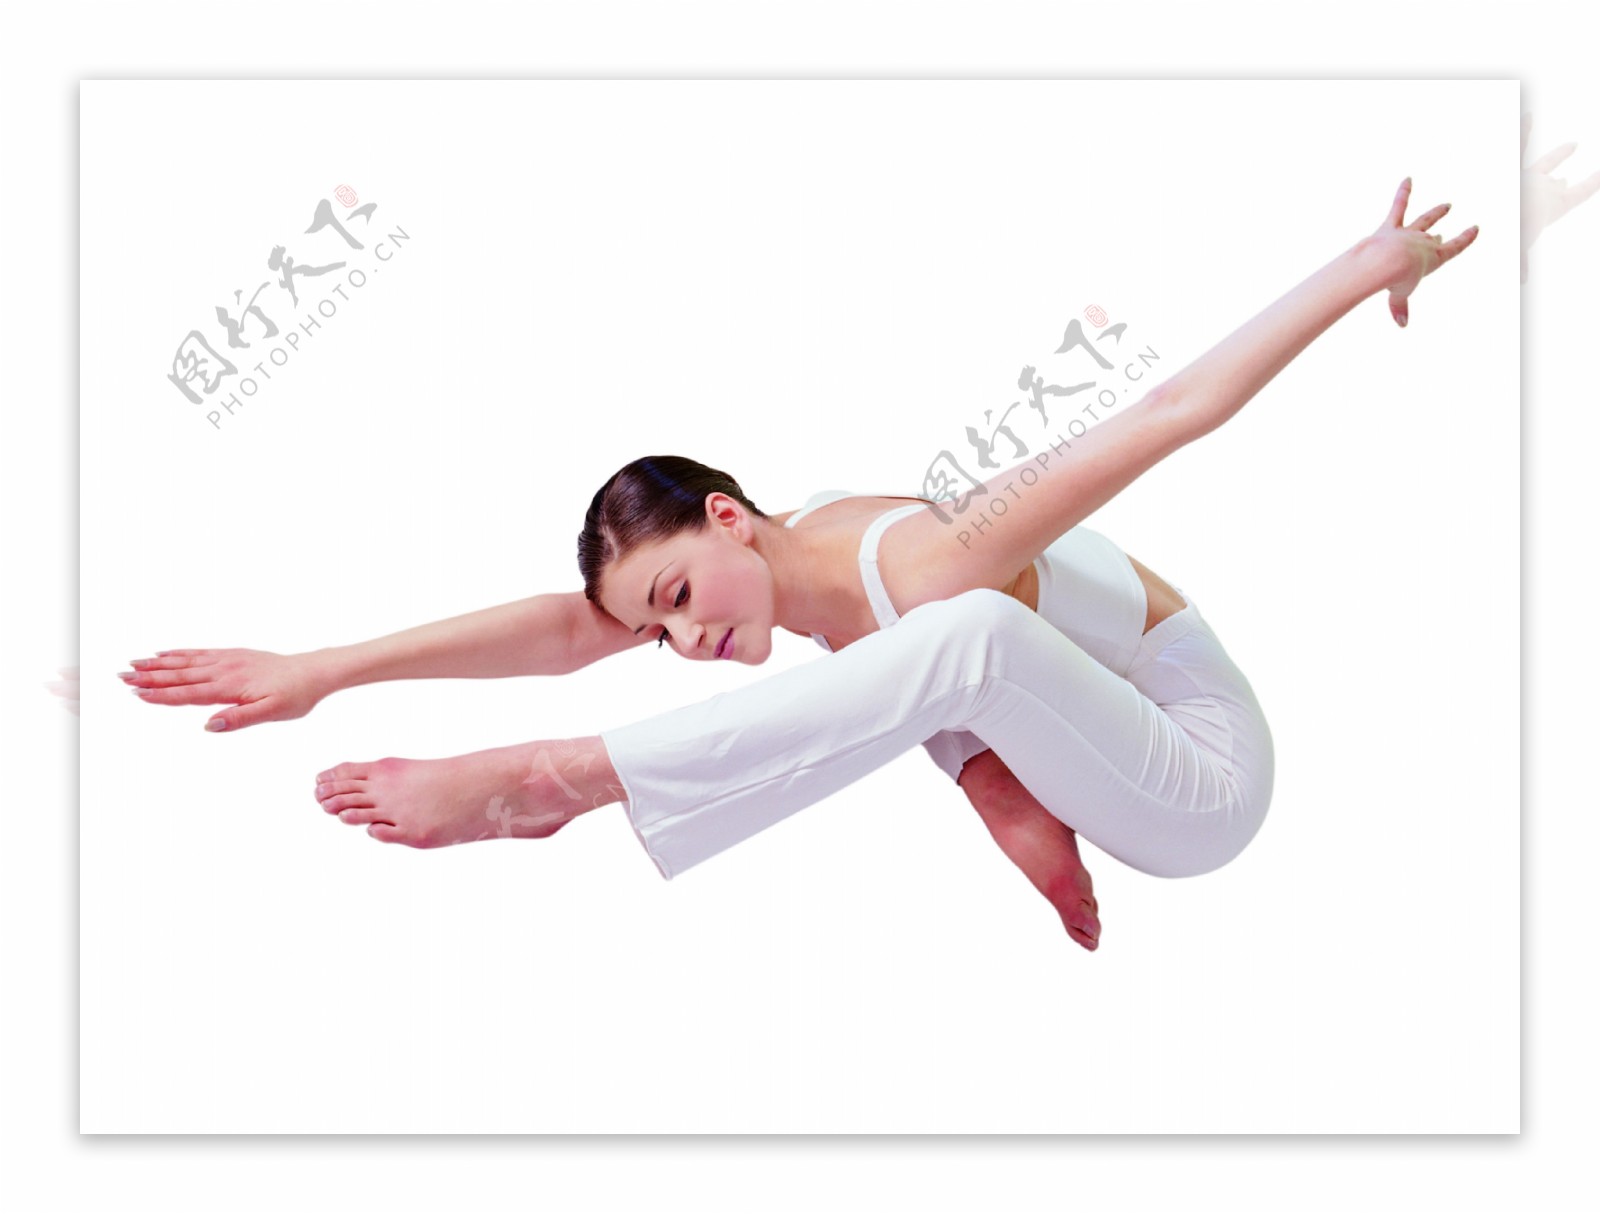 韵律美姿旋律瑜伽运动健身姿势全方位平面设计素材辞典